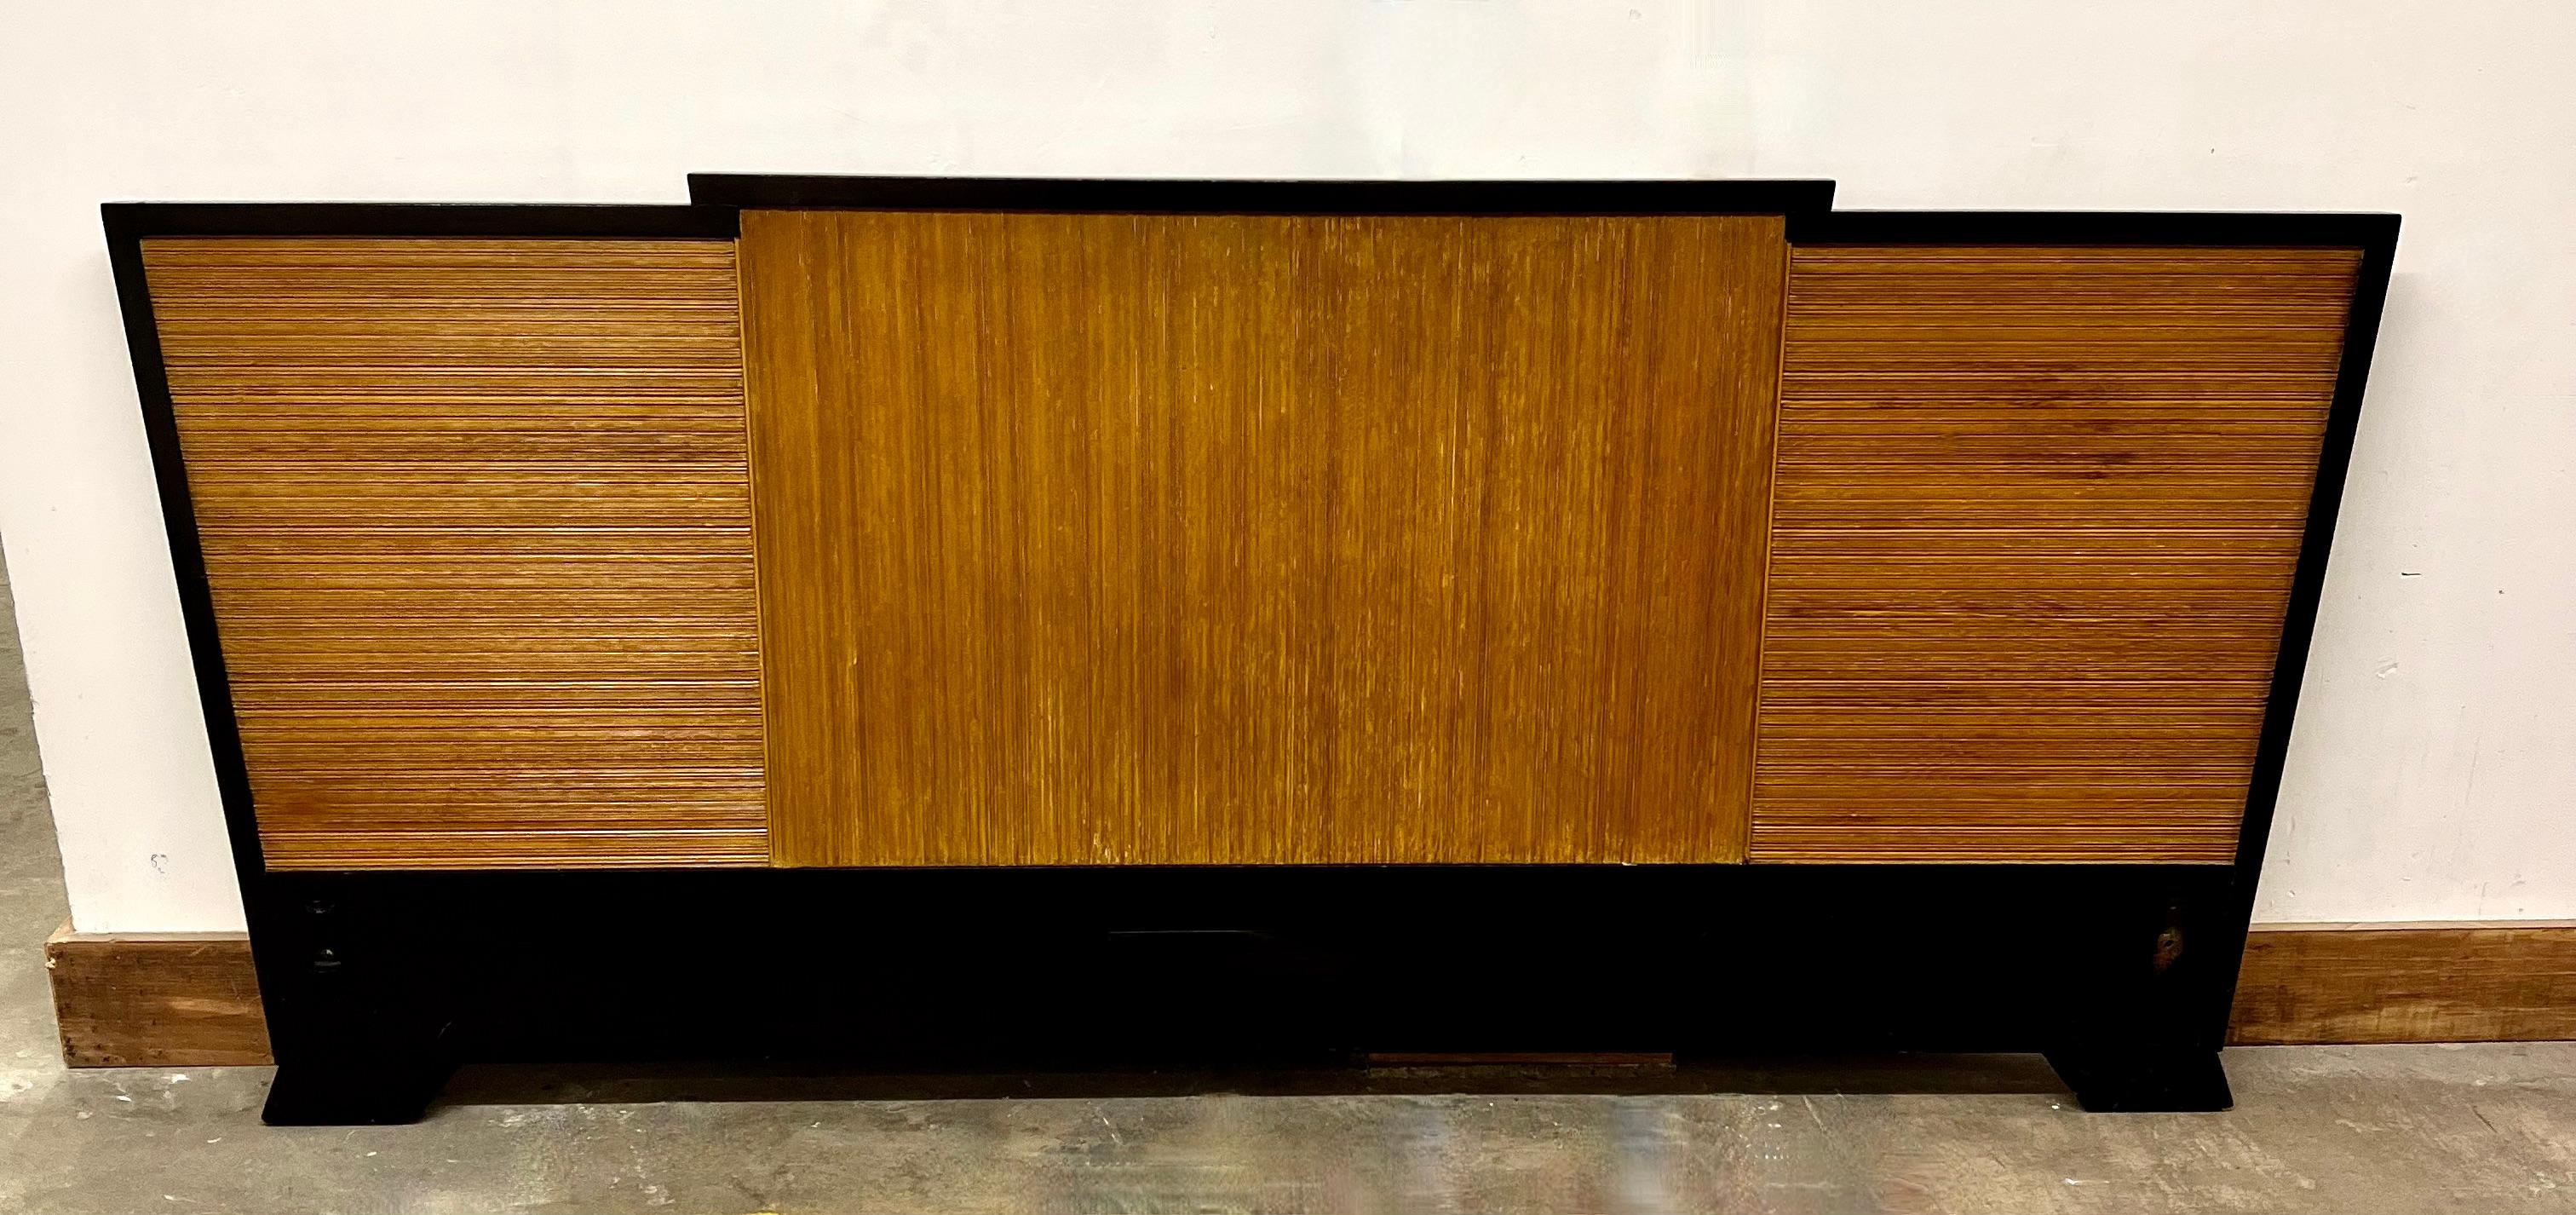 Ein einzigartiges und seltenes Paul Frankl Head Board. Der Rahmen ist schwarz lackiert und besteht aus drei Paneelen aus cerused oder tief gerillter Eiche, die in entgegengesetzten Richtungen angeordnet sind. 

Ein echtes Stück aus der Mitte des